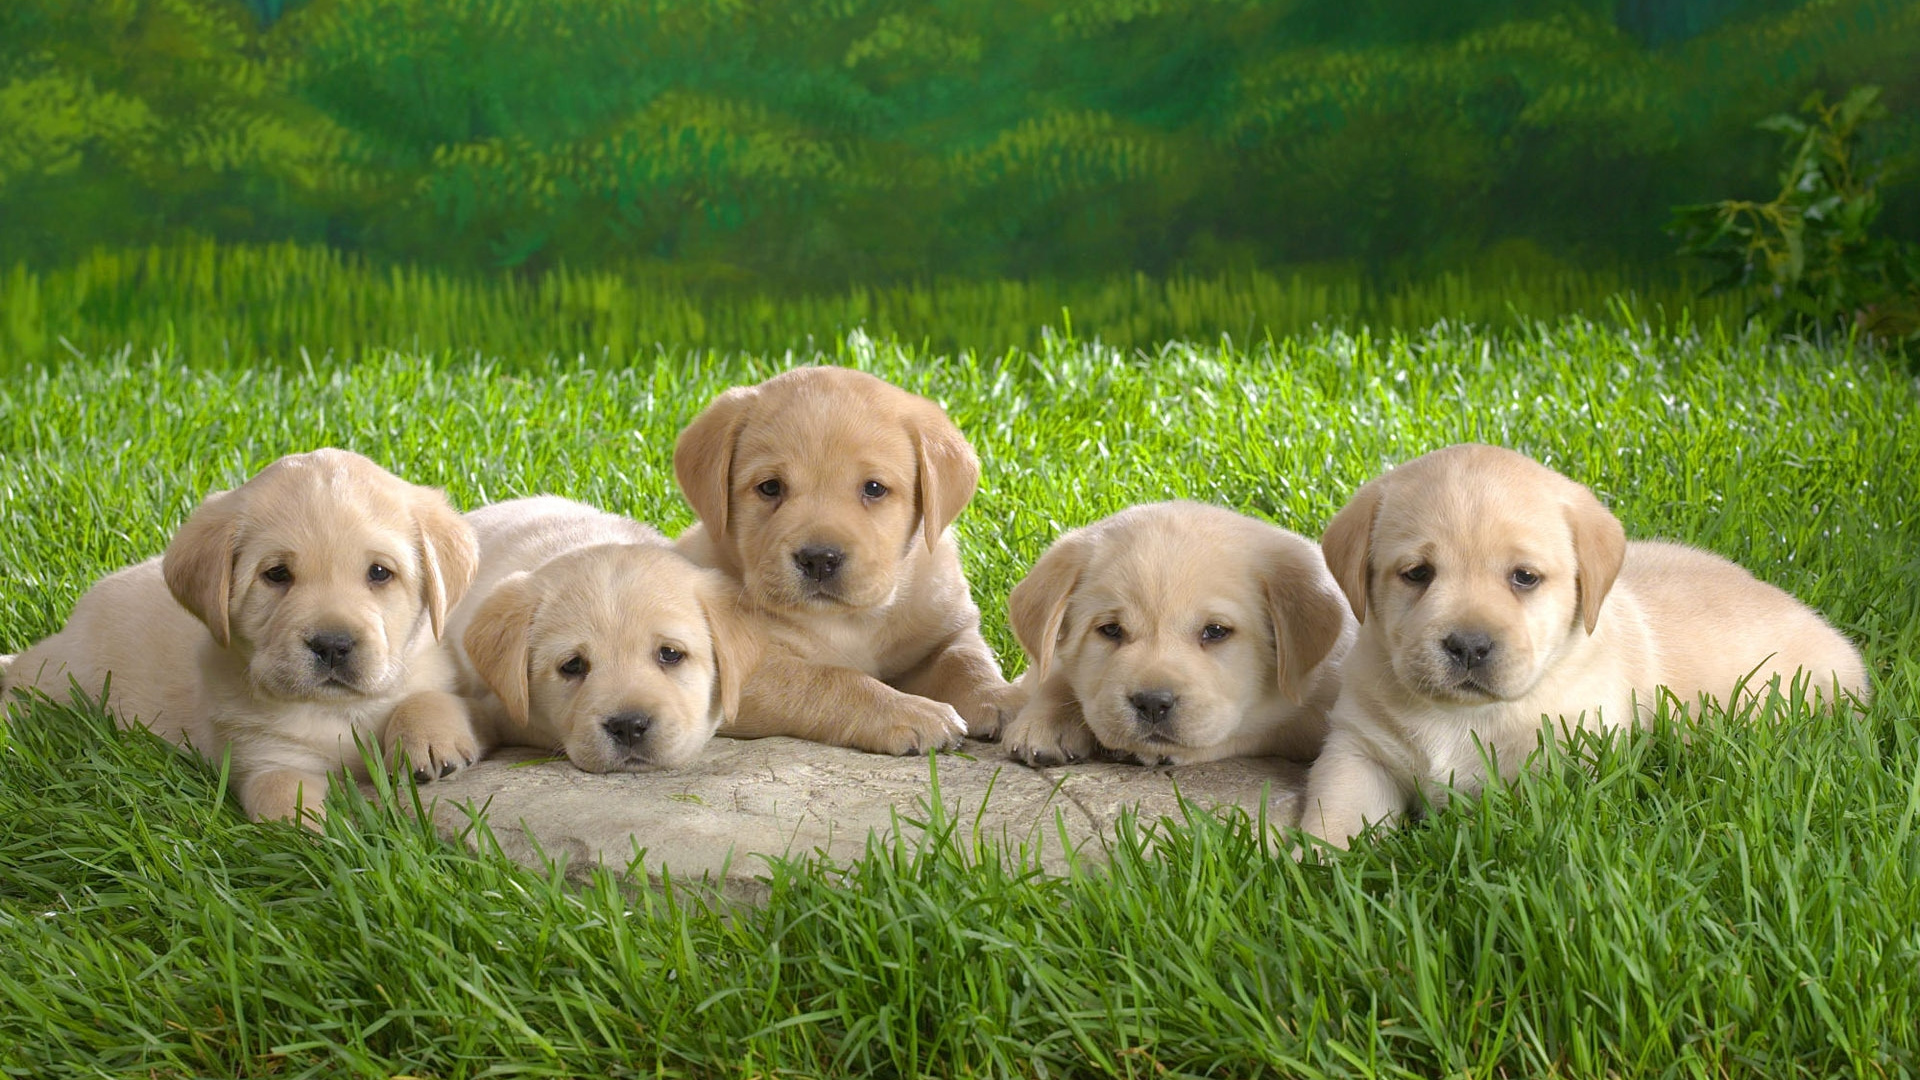 小狗, 拉布拉多犬, 可爱, 品种的狗, 黄金猎犬 壁纸 1920x1080 允许